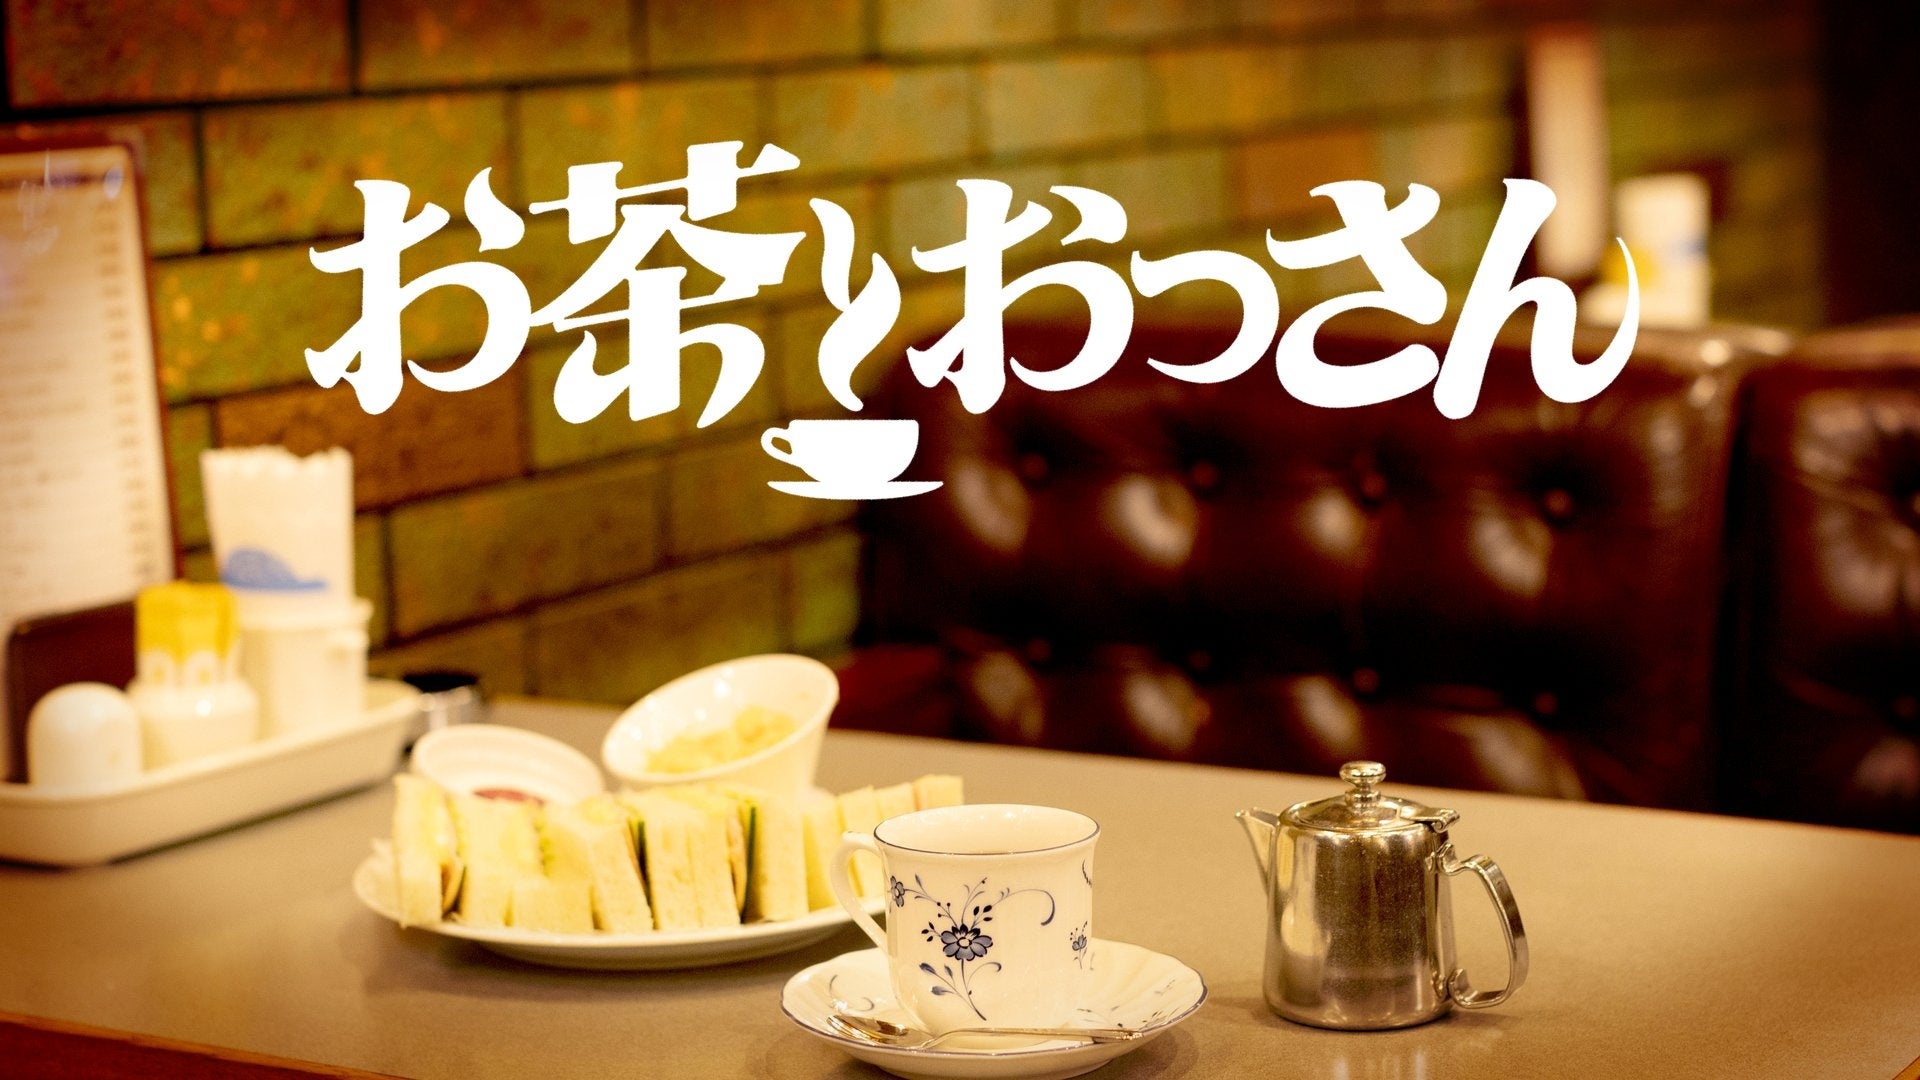 松本人志が語るHIKAKIN の印象に UUUM 会長も 納得「お茶とおっさん」のサブ画像3